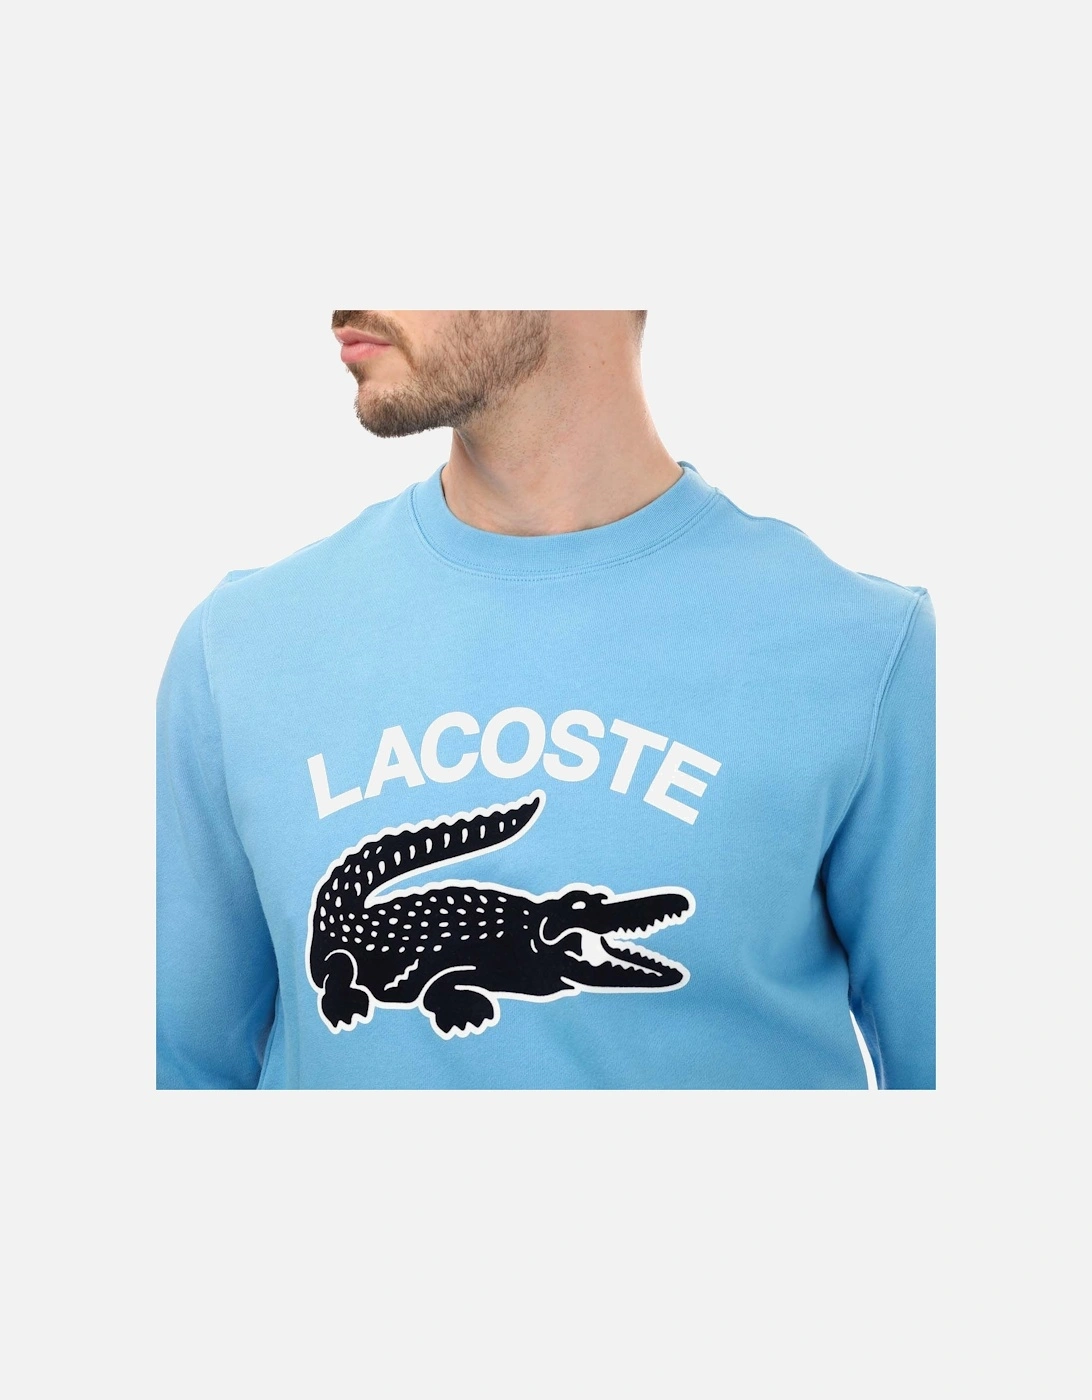 Mens Crocodile Print Sweatshirt